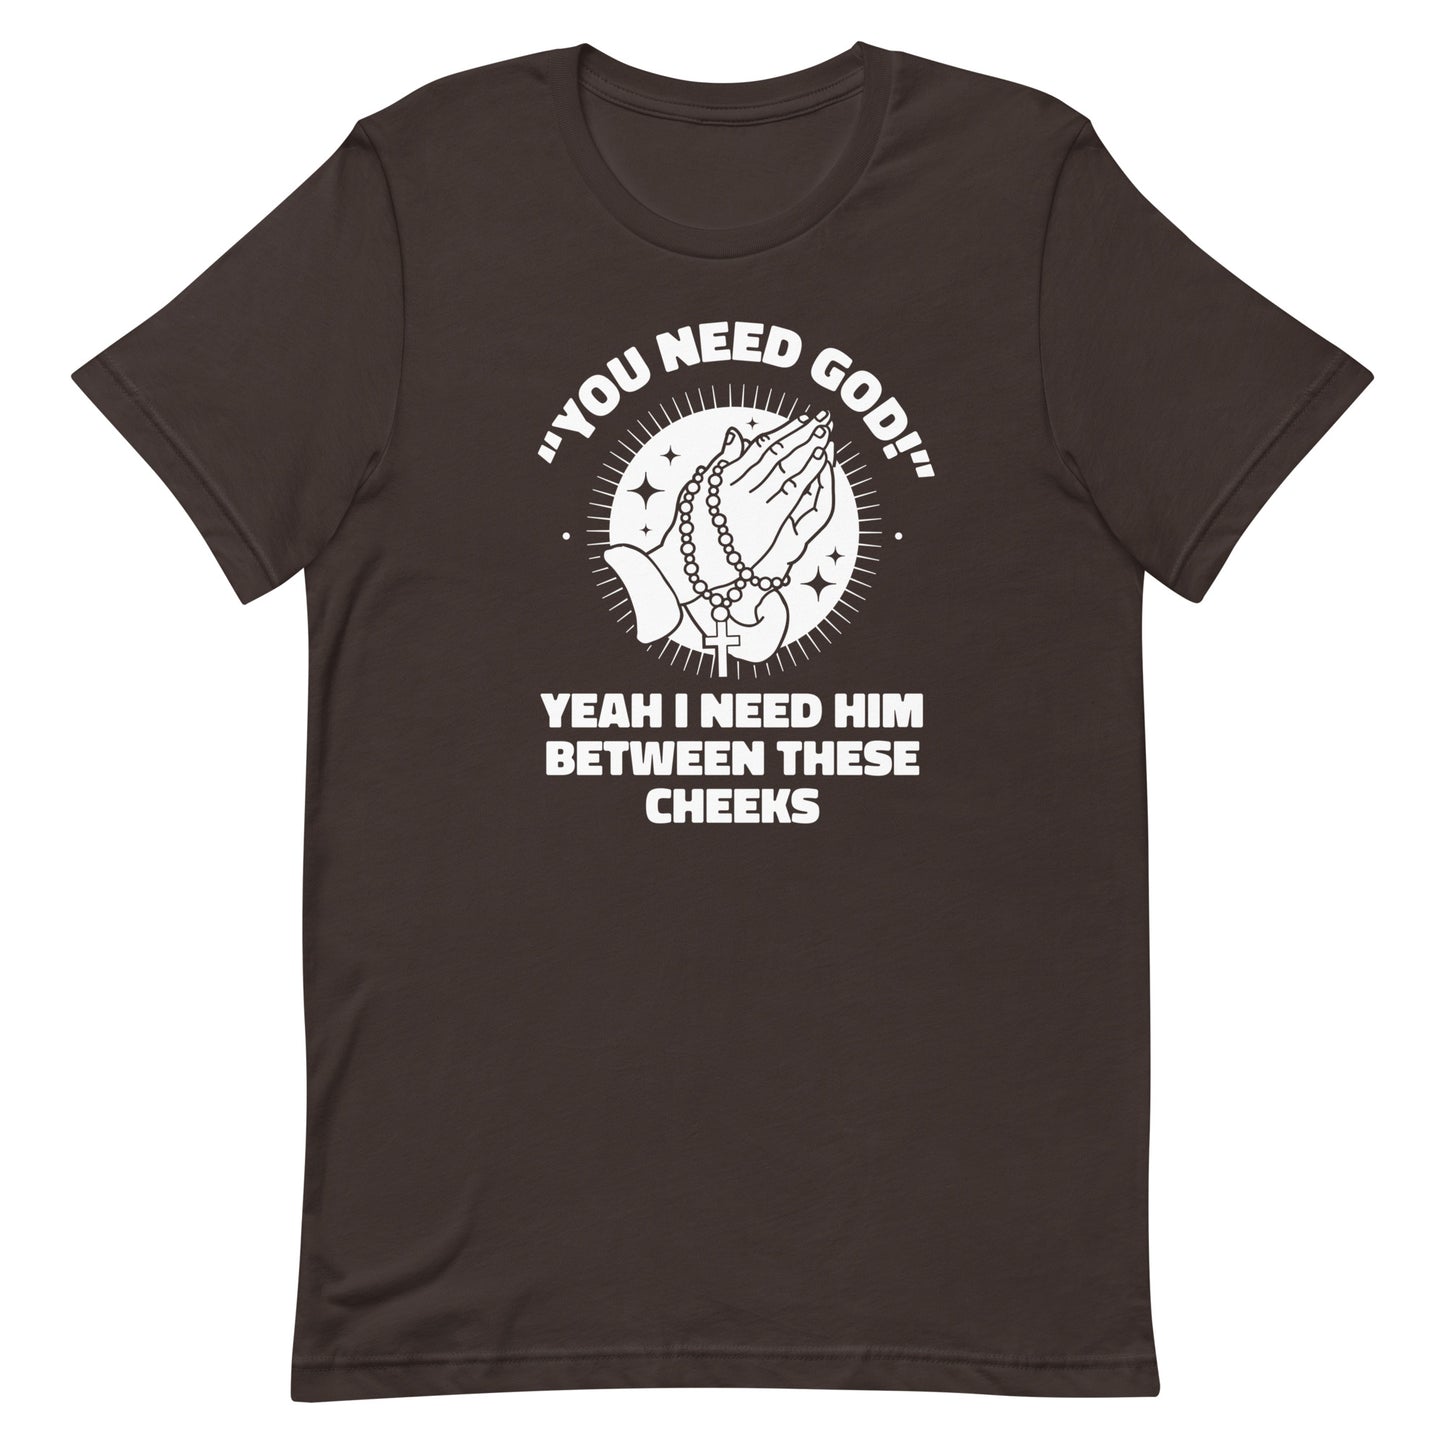 You Need God Unisex t-shirt